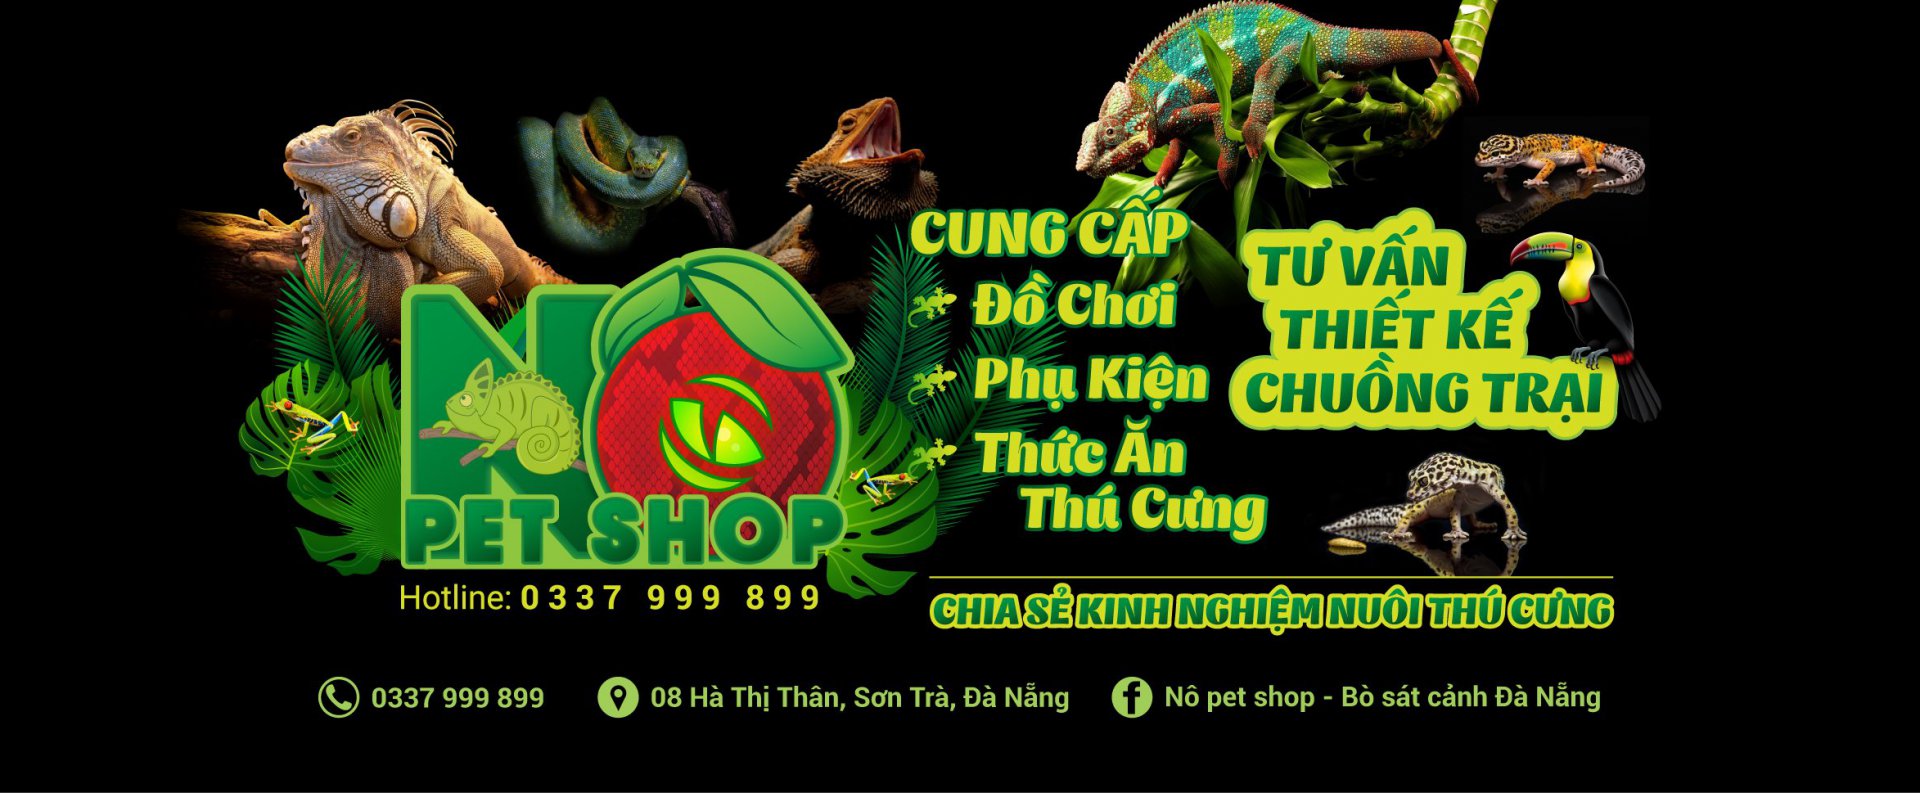 Nô pet shop - Bò sát cảnh Đà Nẵng